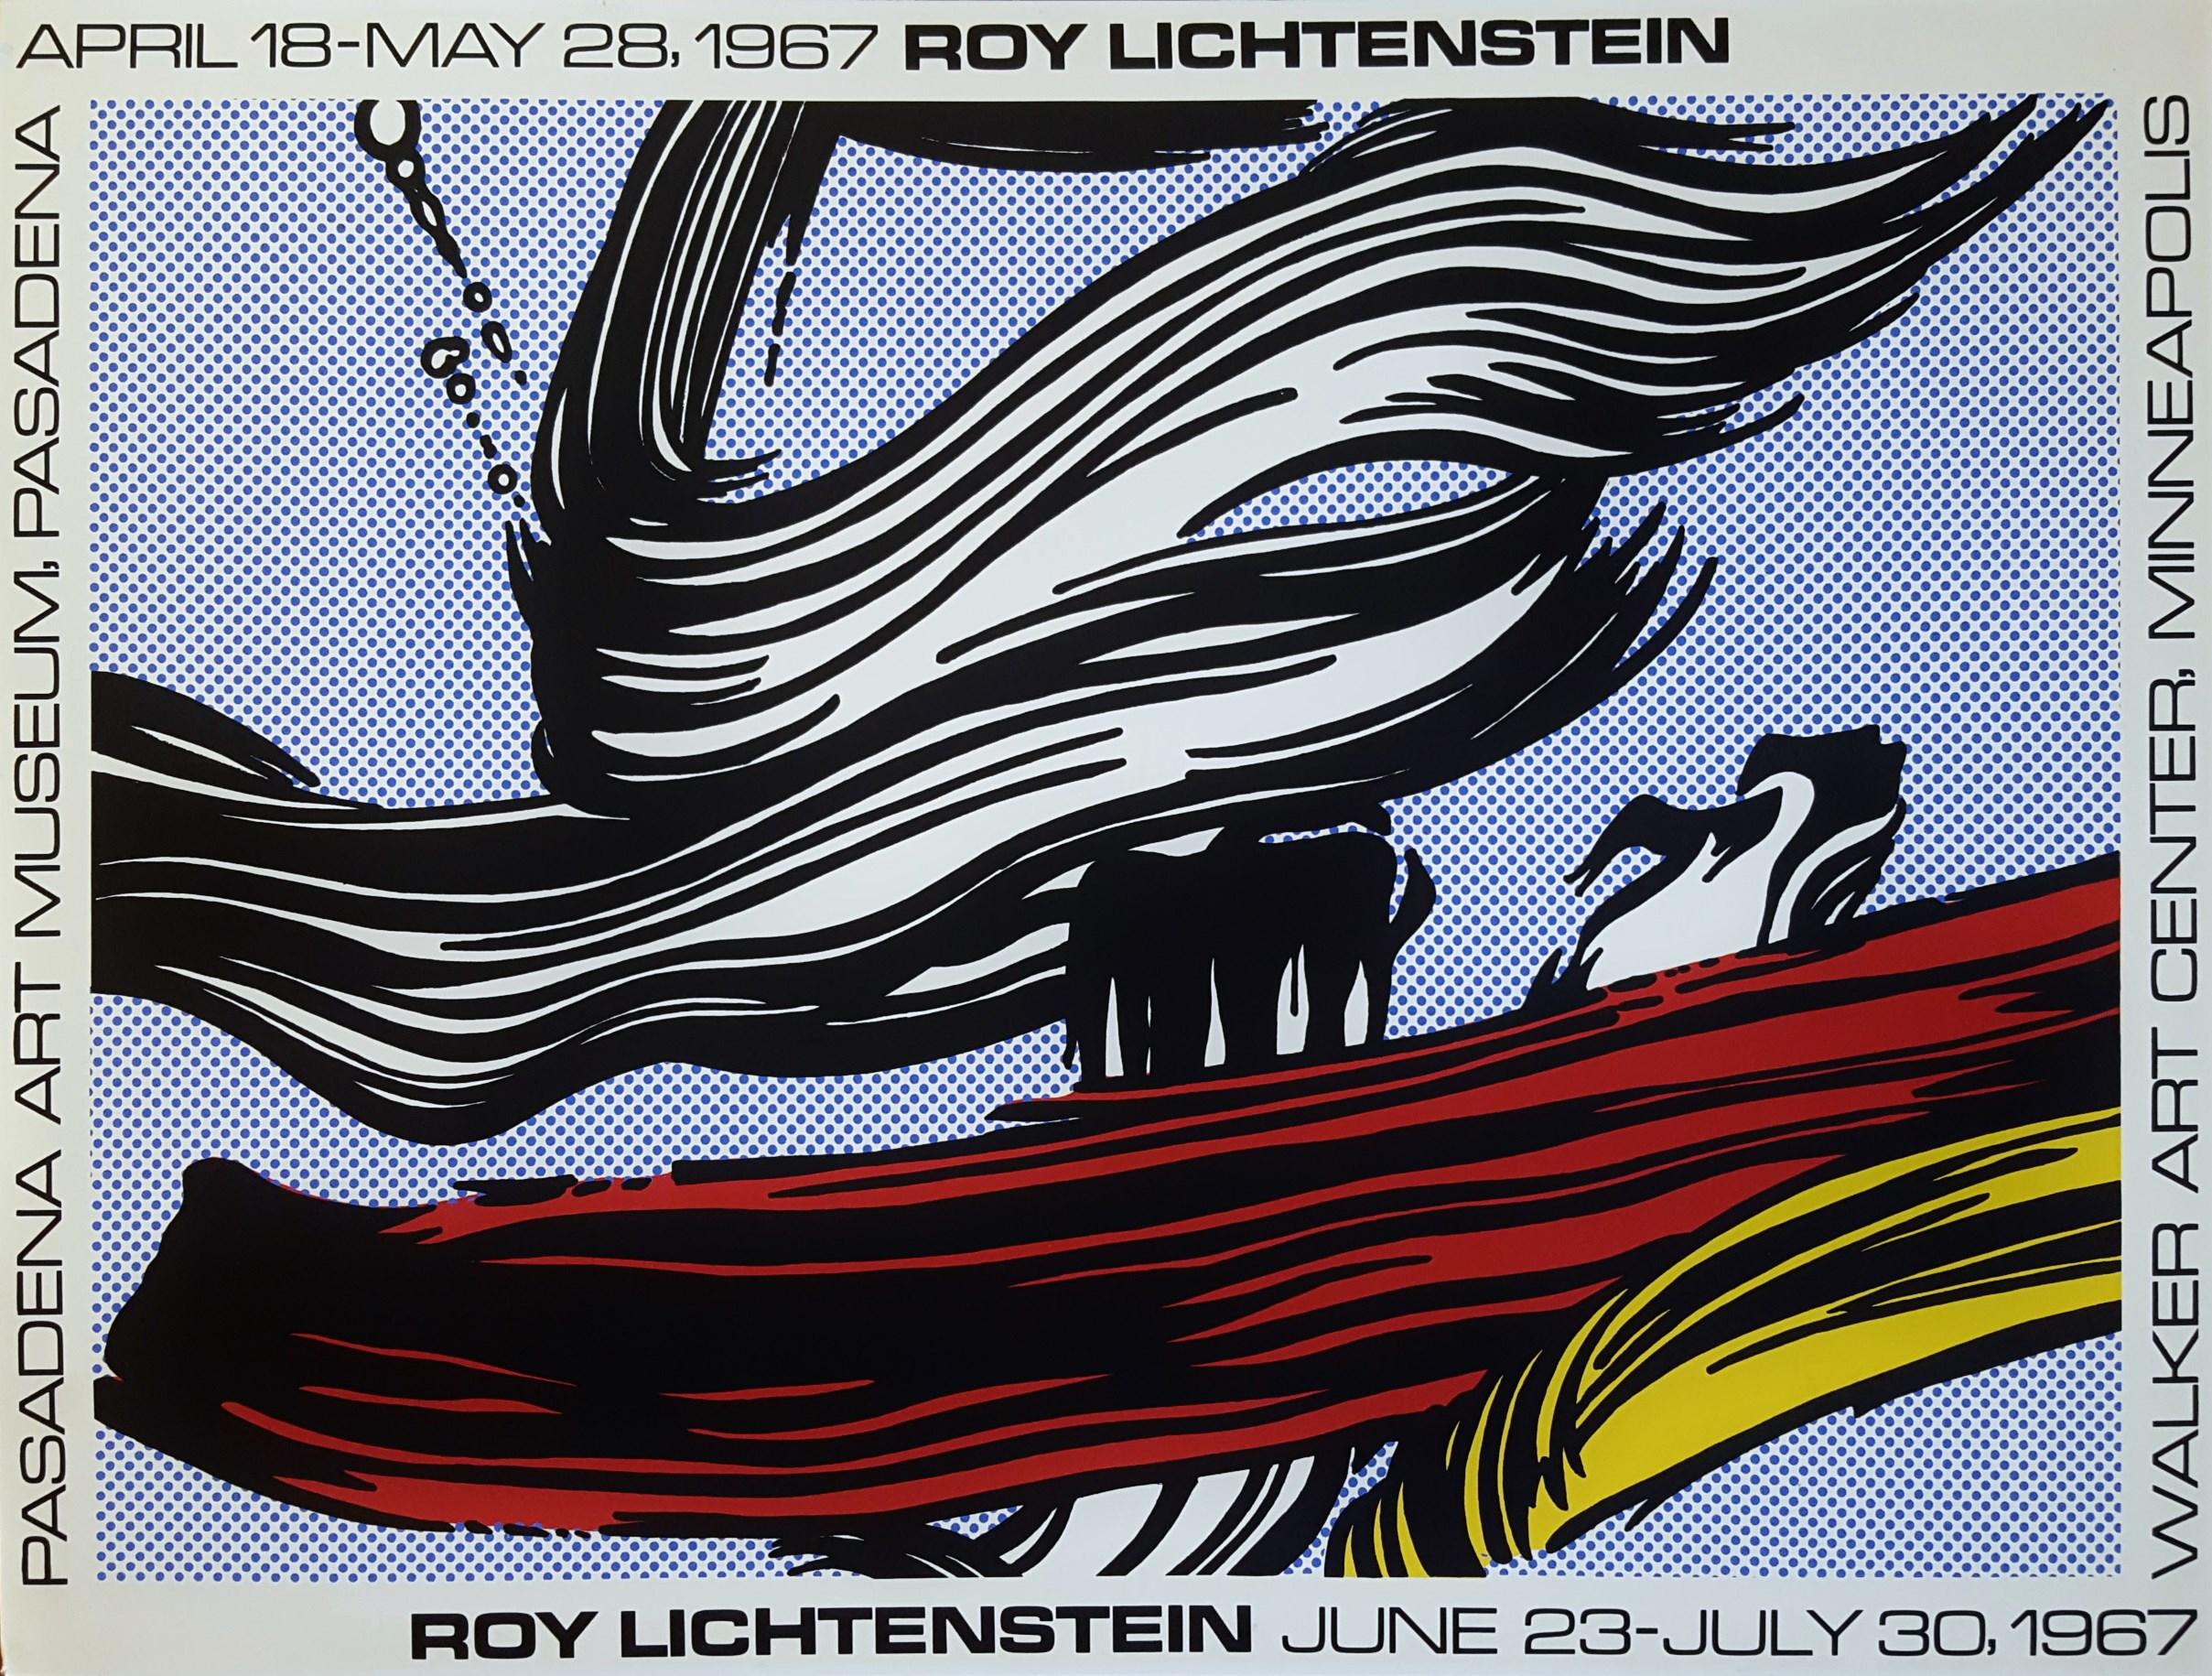 Roy Lichtenstein Abstract Print - Brushstrokes Poster